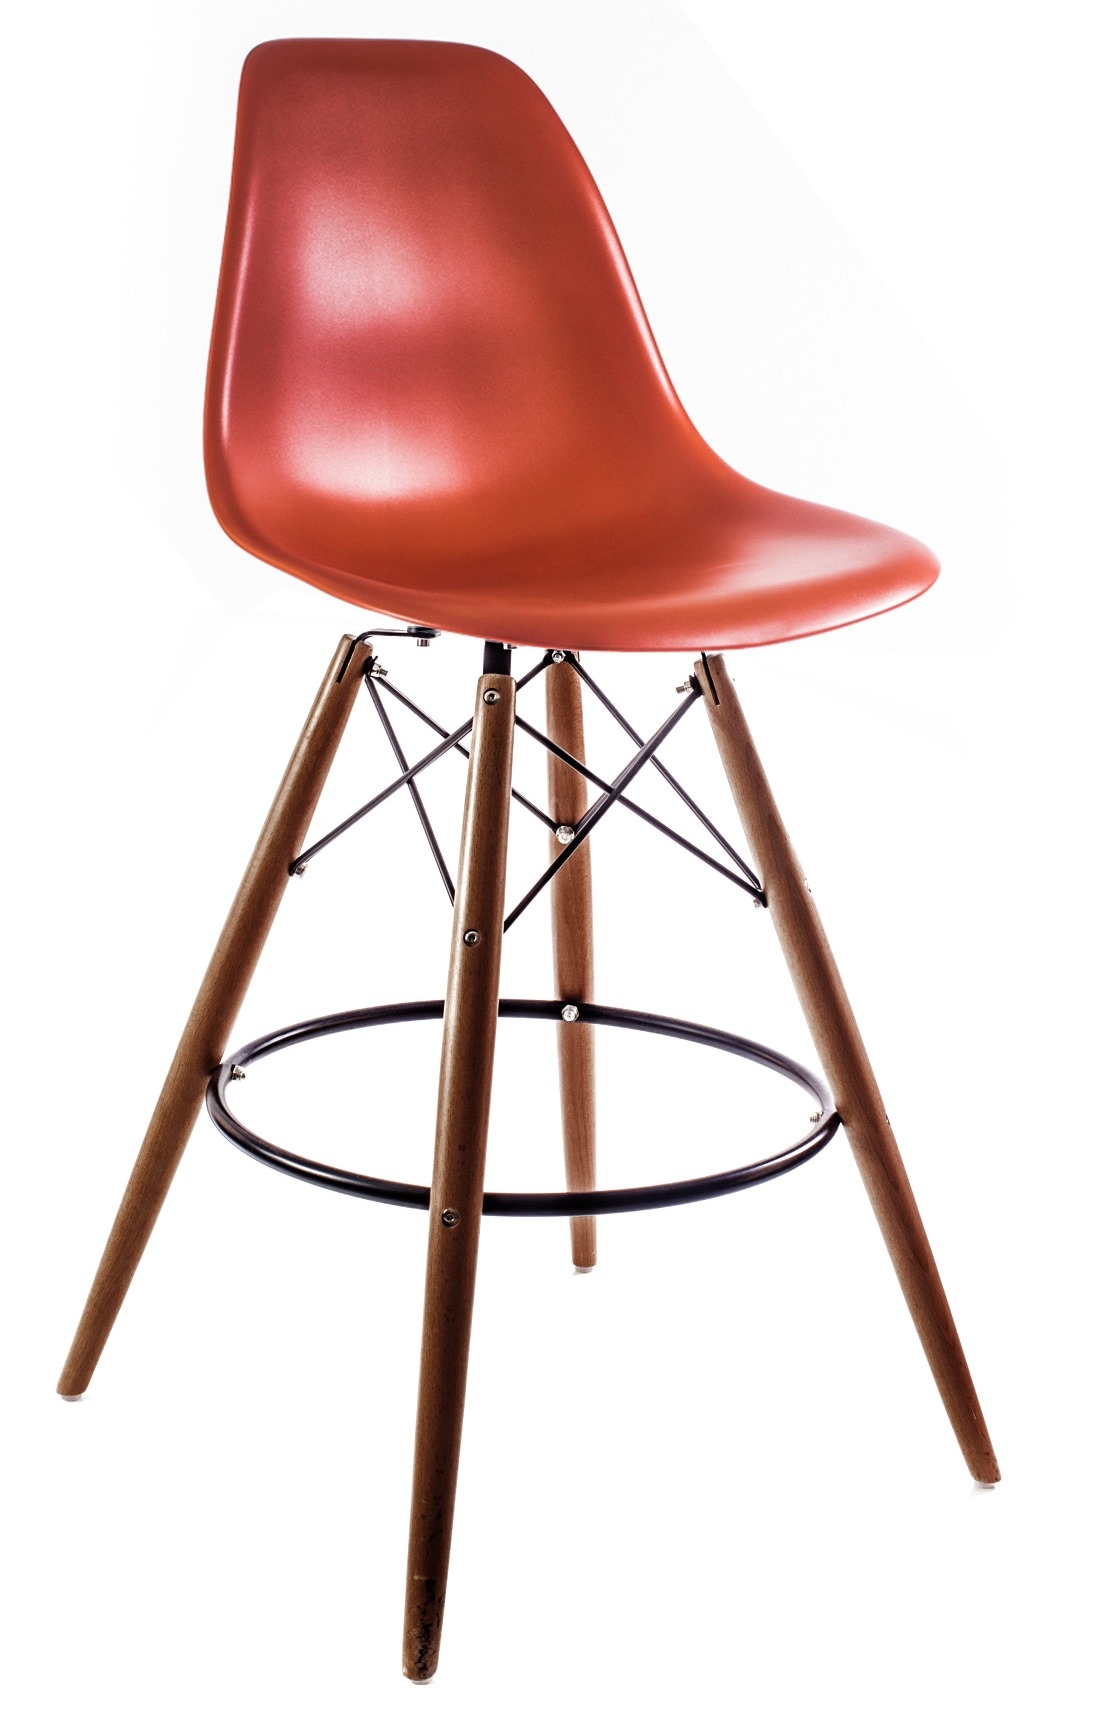 барный стул пластиковый красный